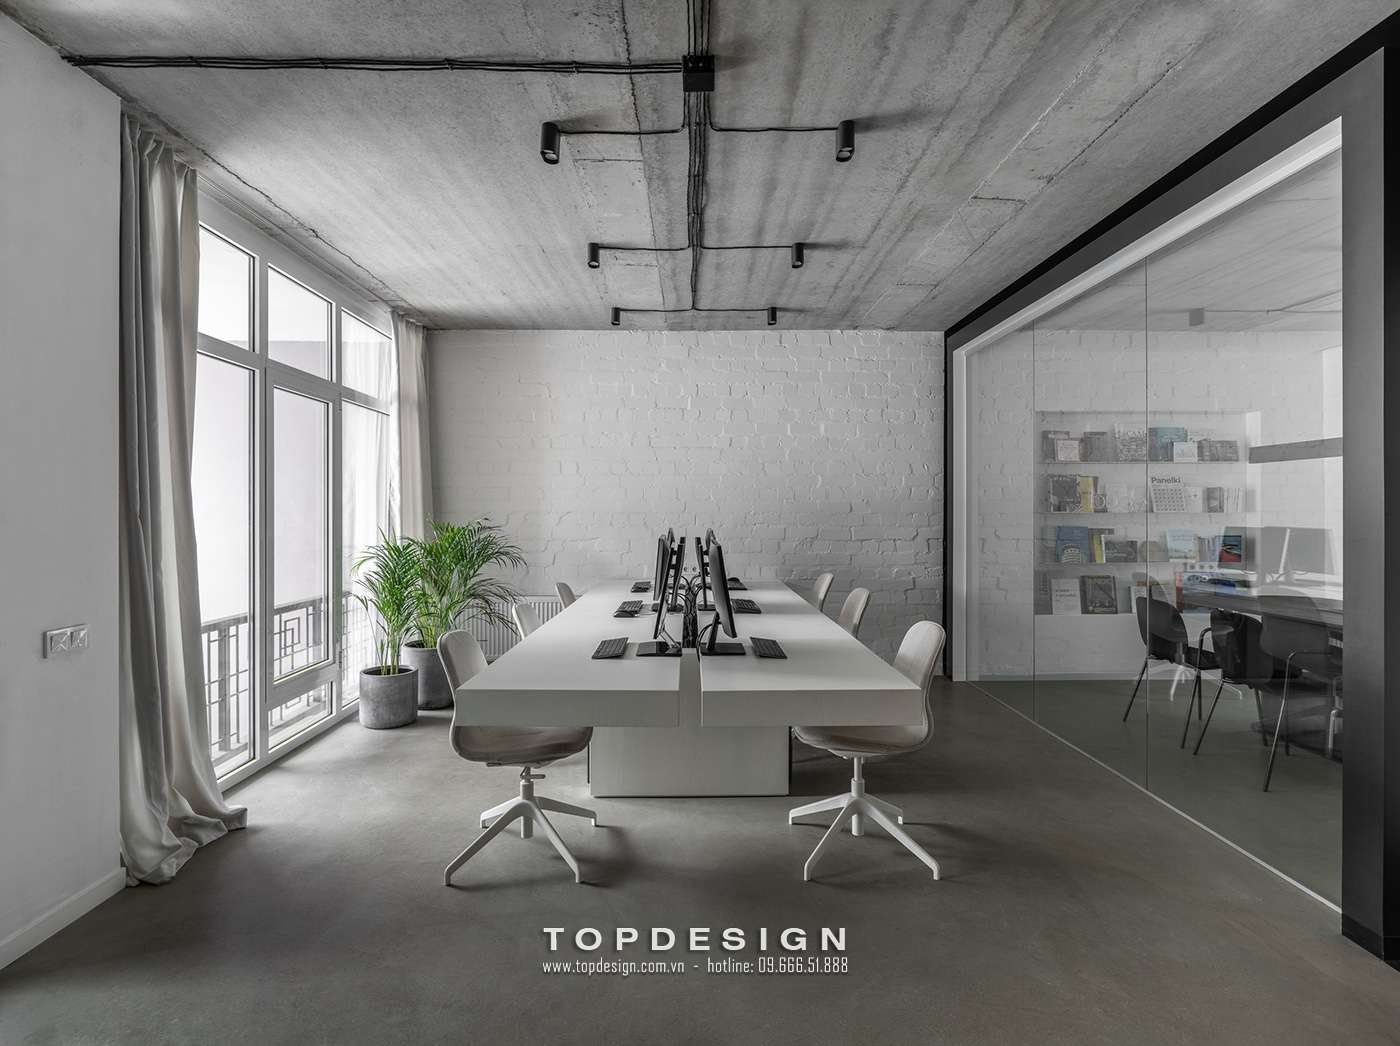 Prestigious, professional office interior design in Hanoi | TOPDESIGN 3